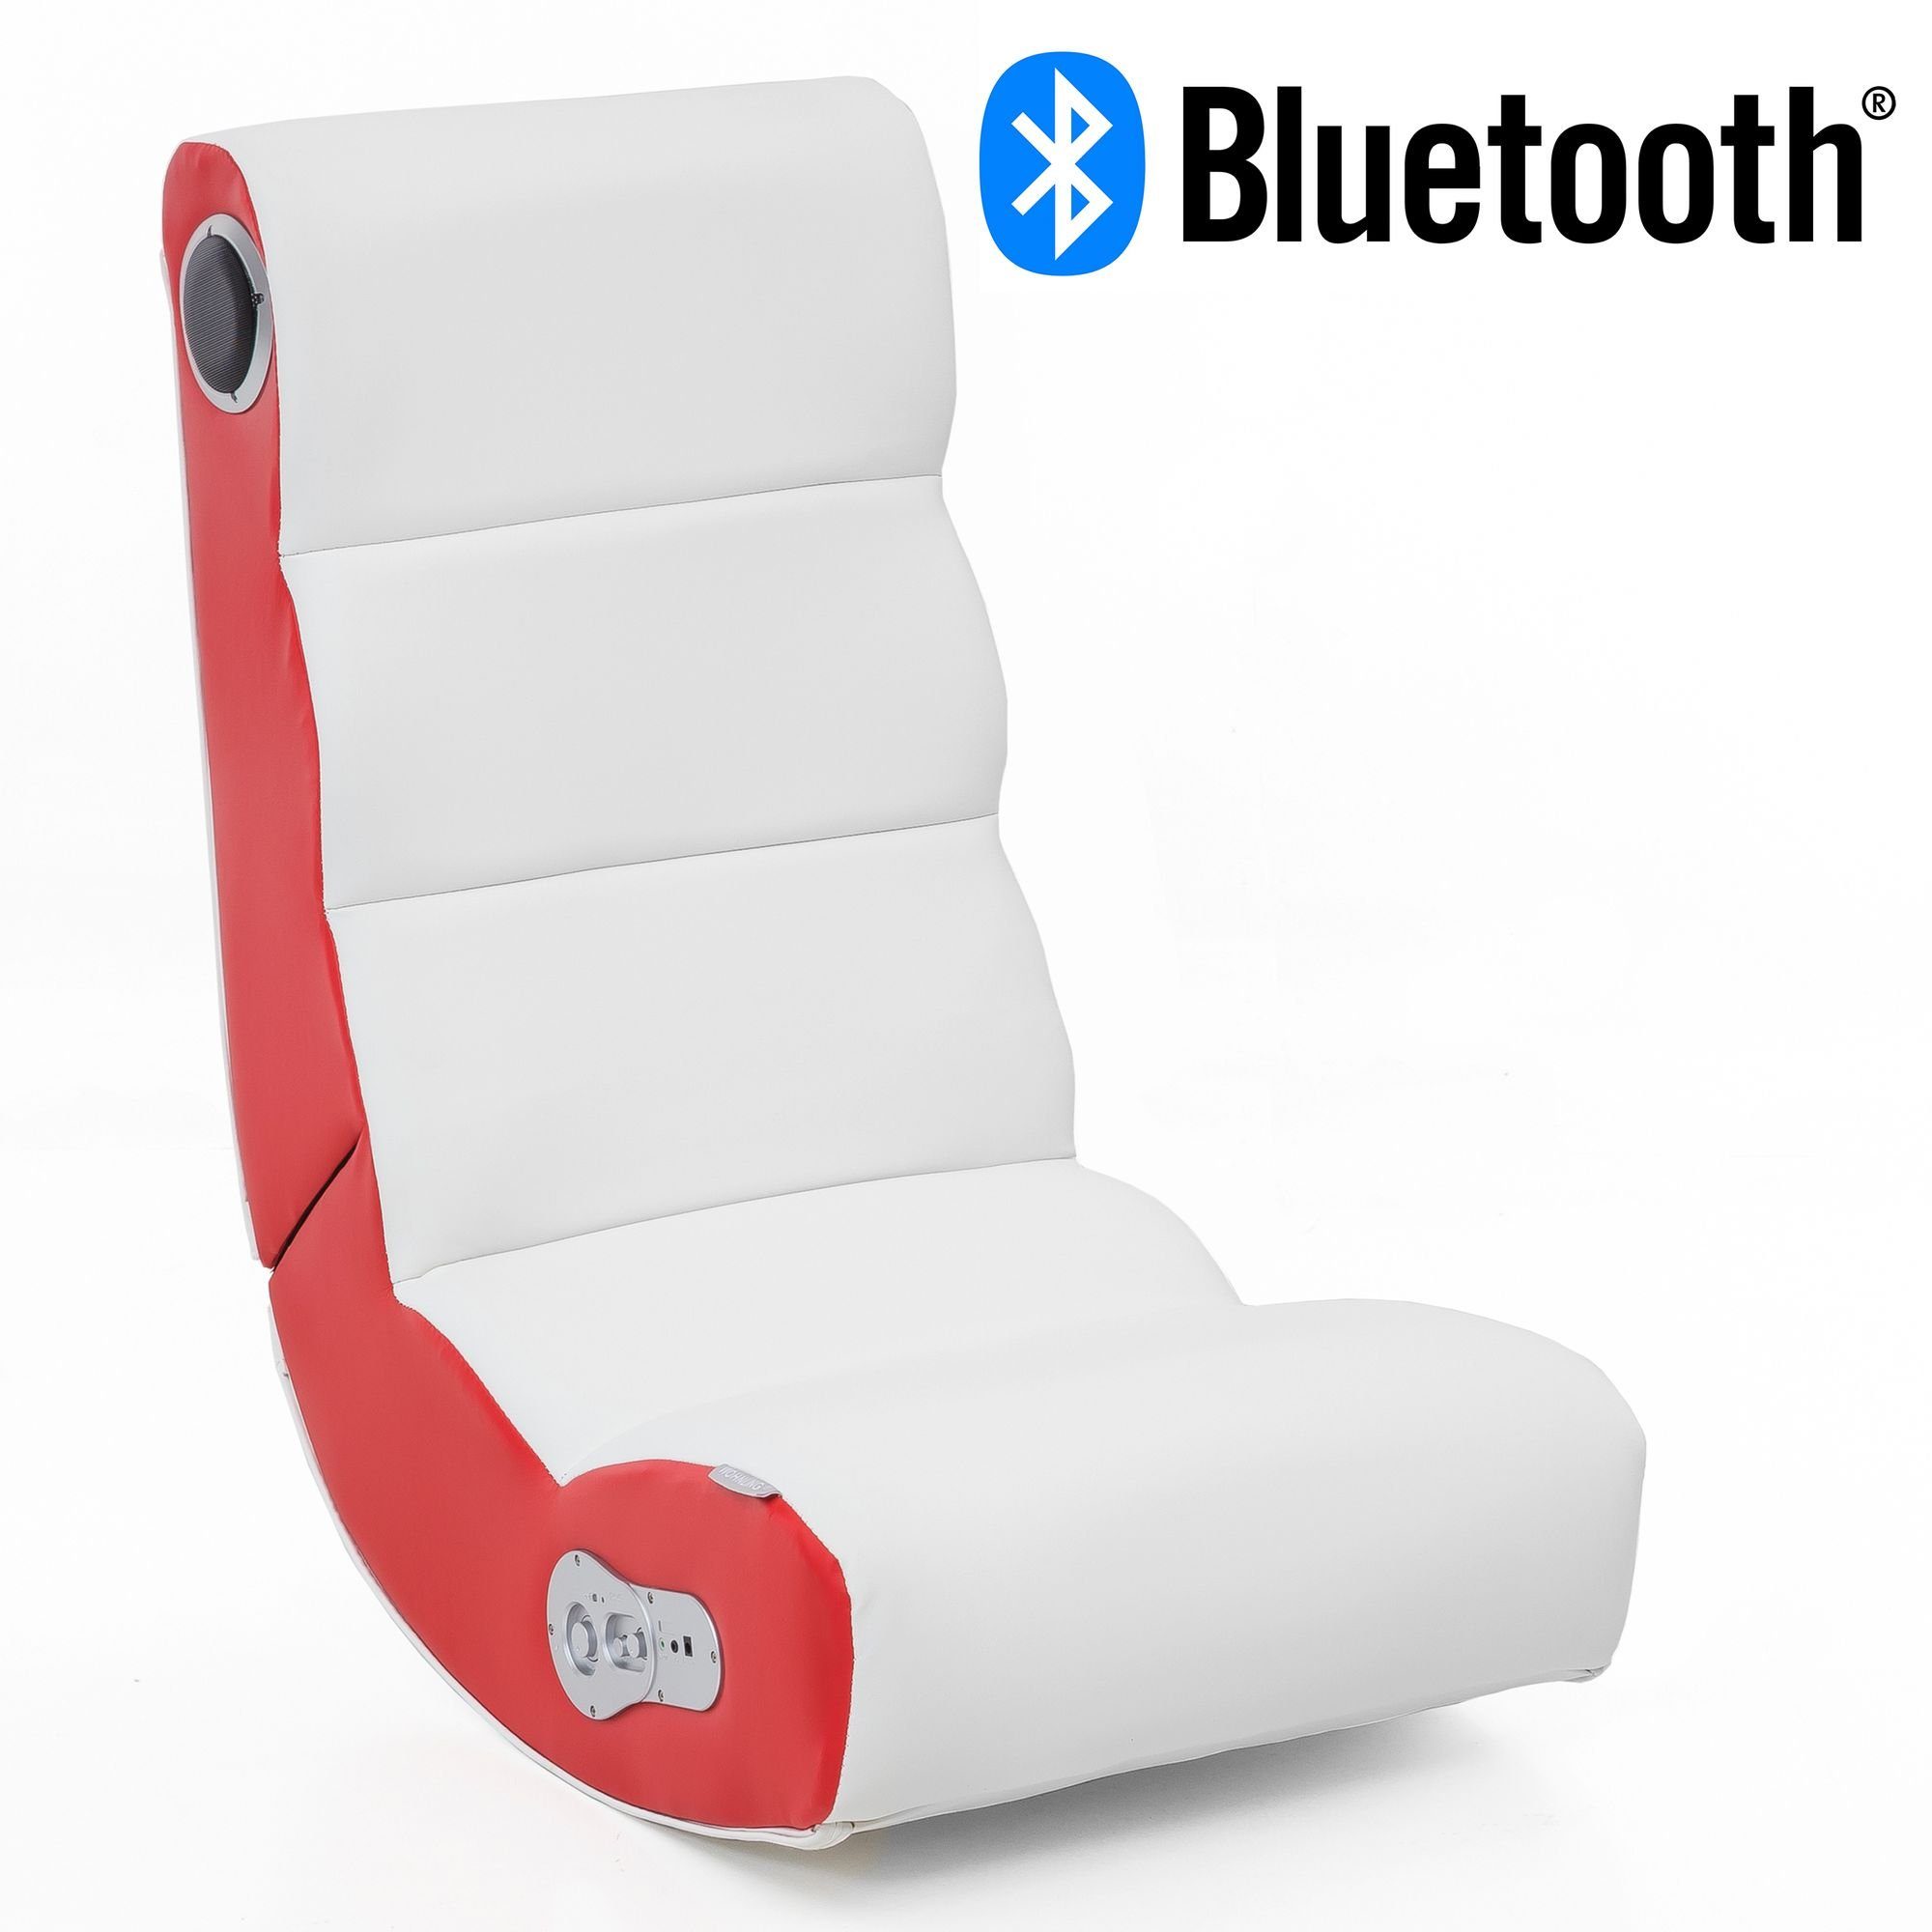 FINEBUY Gaming Chair »SuVa11389_1«, Soundchair mit Bluetooth, Musiksessel  mit eingebauten Lautsprechern, Multimediasessel für Gamer, 2.1 Soundsystem  - Subwoofer, Music Gaming Sessel Rocker Chair online kaufen | OTTO